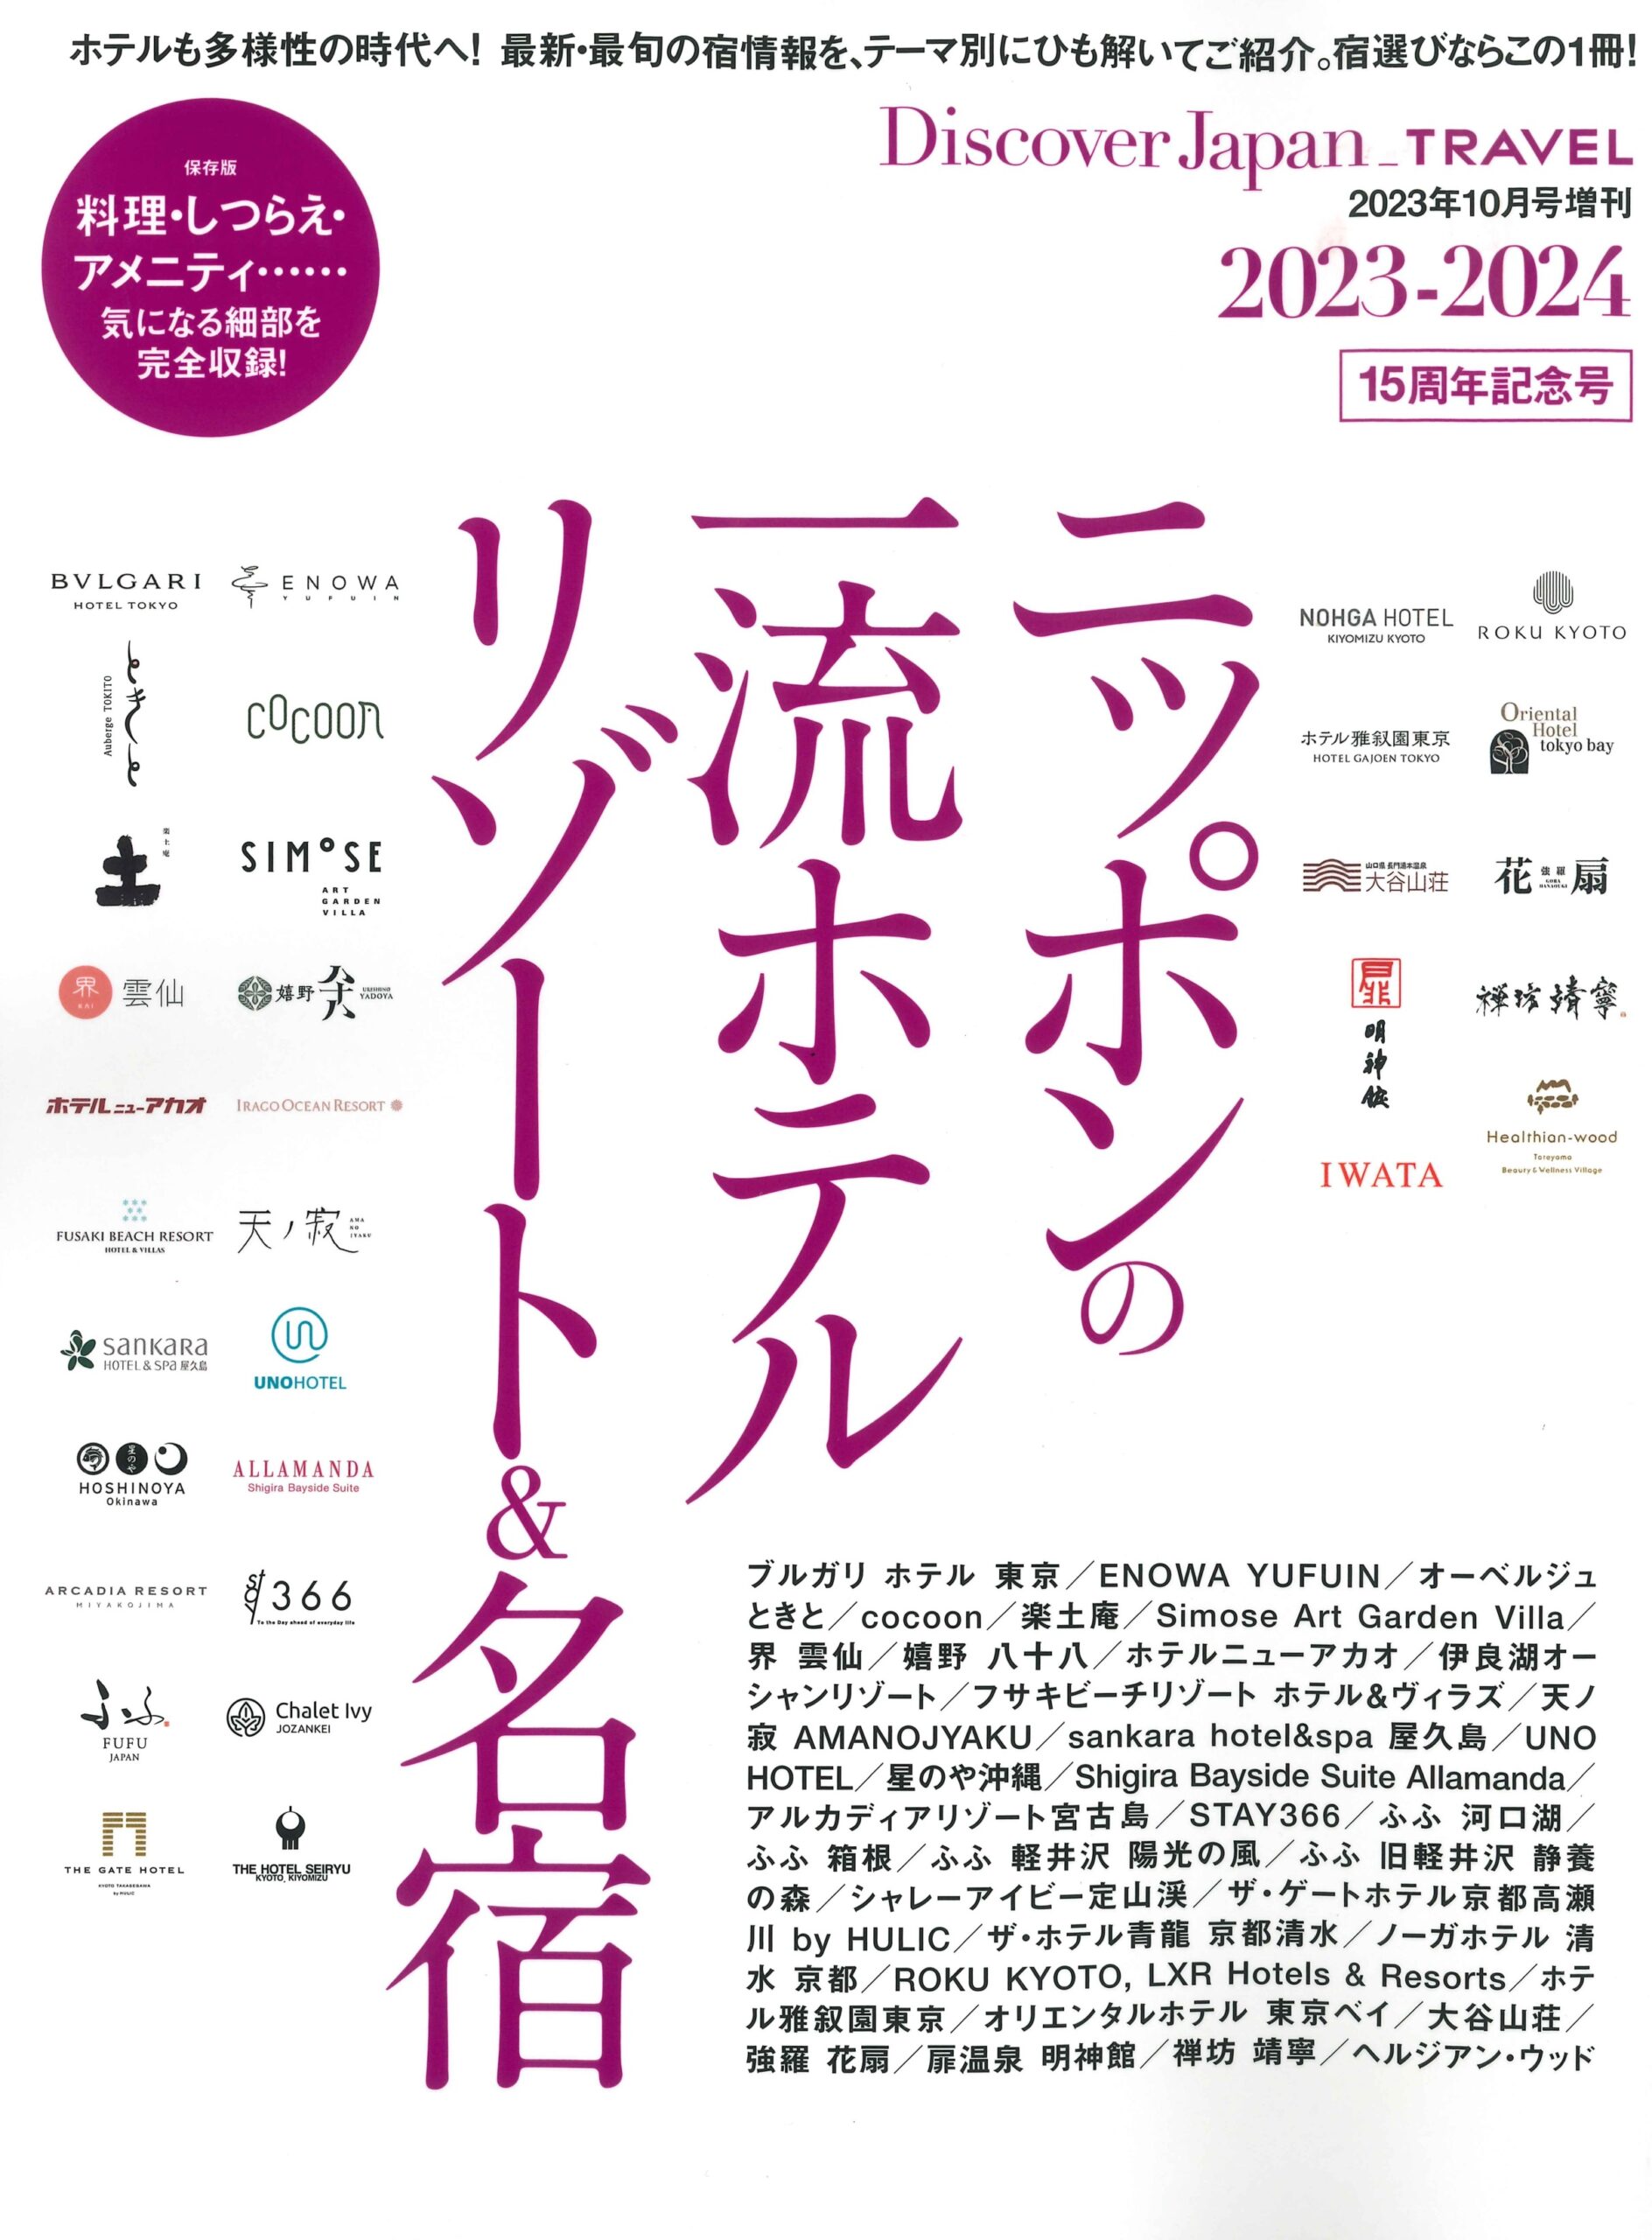 【掲載情報】Discover Japan増刊号「ニッポンの一流ホテルリゾート＆名宿 2023-2024」にイワタ製品が掲載されました。